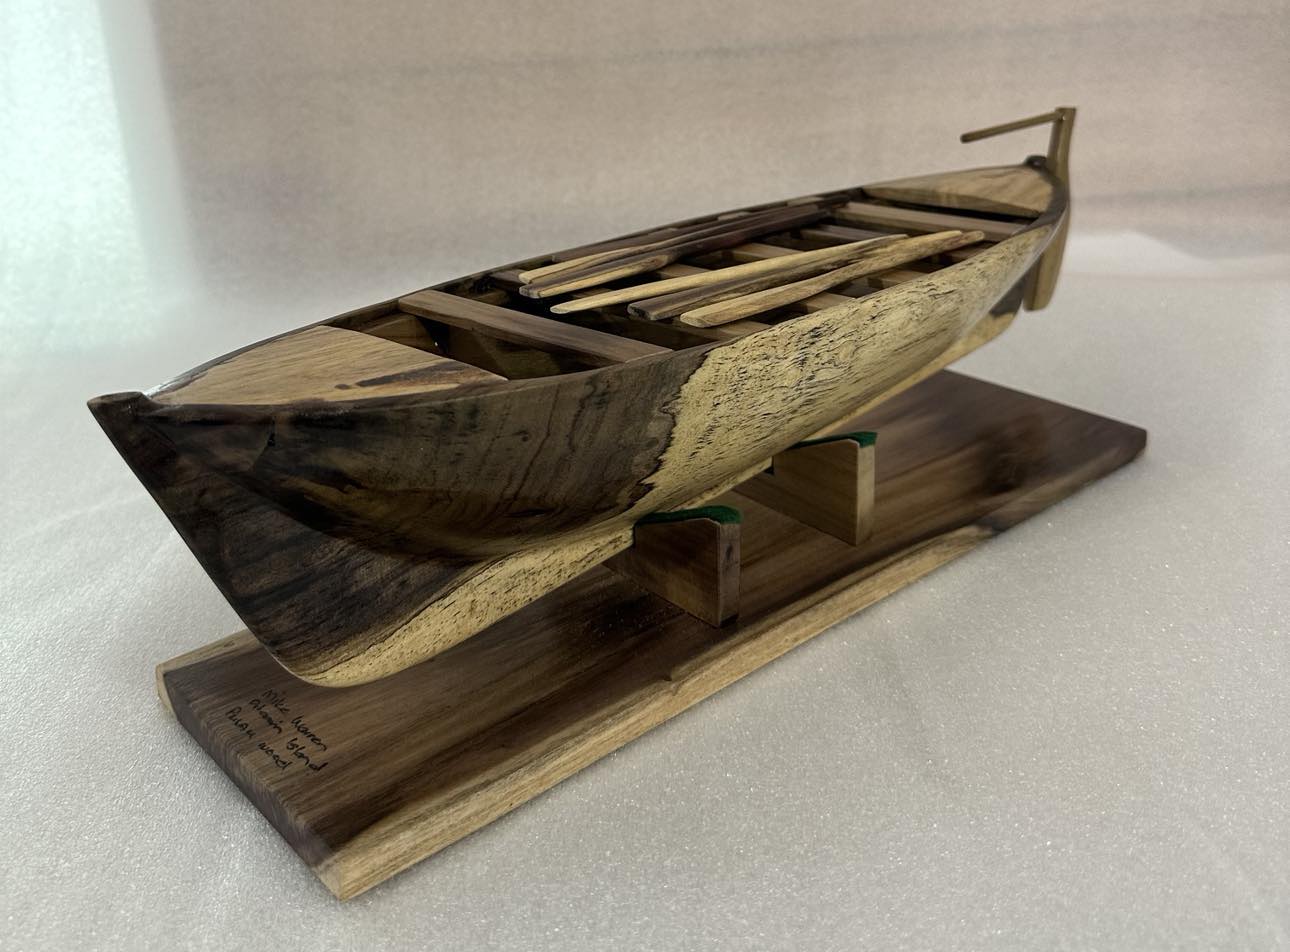 Modelo de barco largo de la isla Pitcairn tallado a mano en madera de Burau local